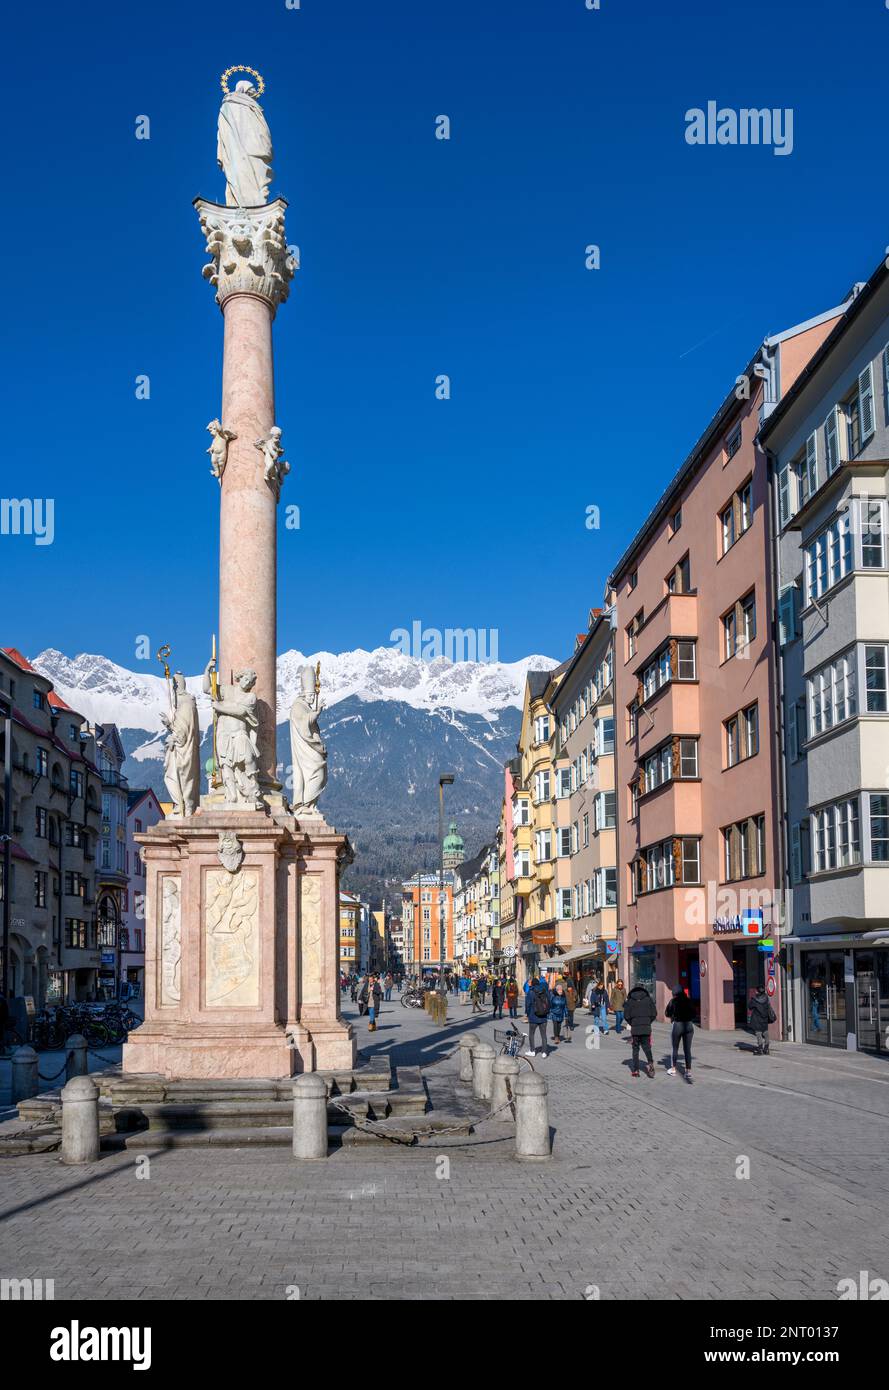 Statue de la Vierge Marie sur Maria-Theresien Strasse dans le centre d'Innsbruck, Autriche Banque D'Images